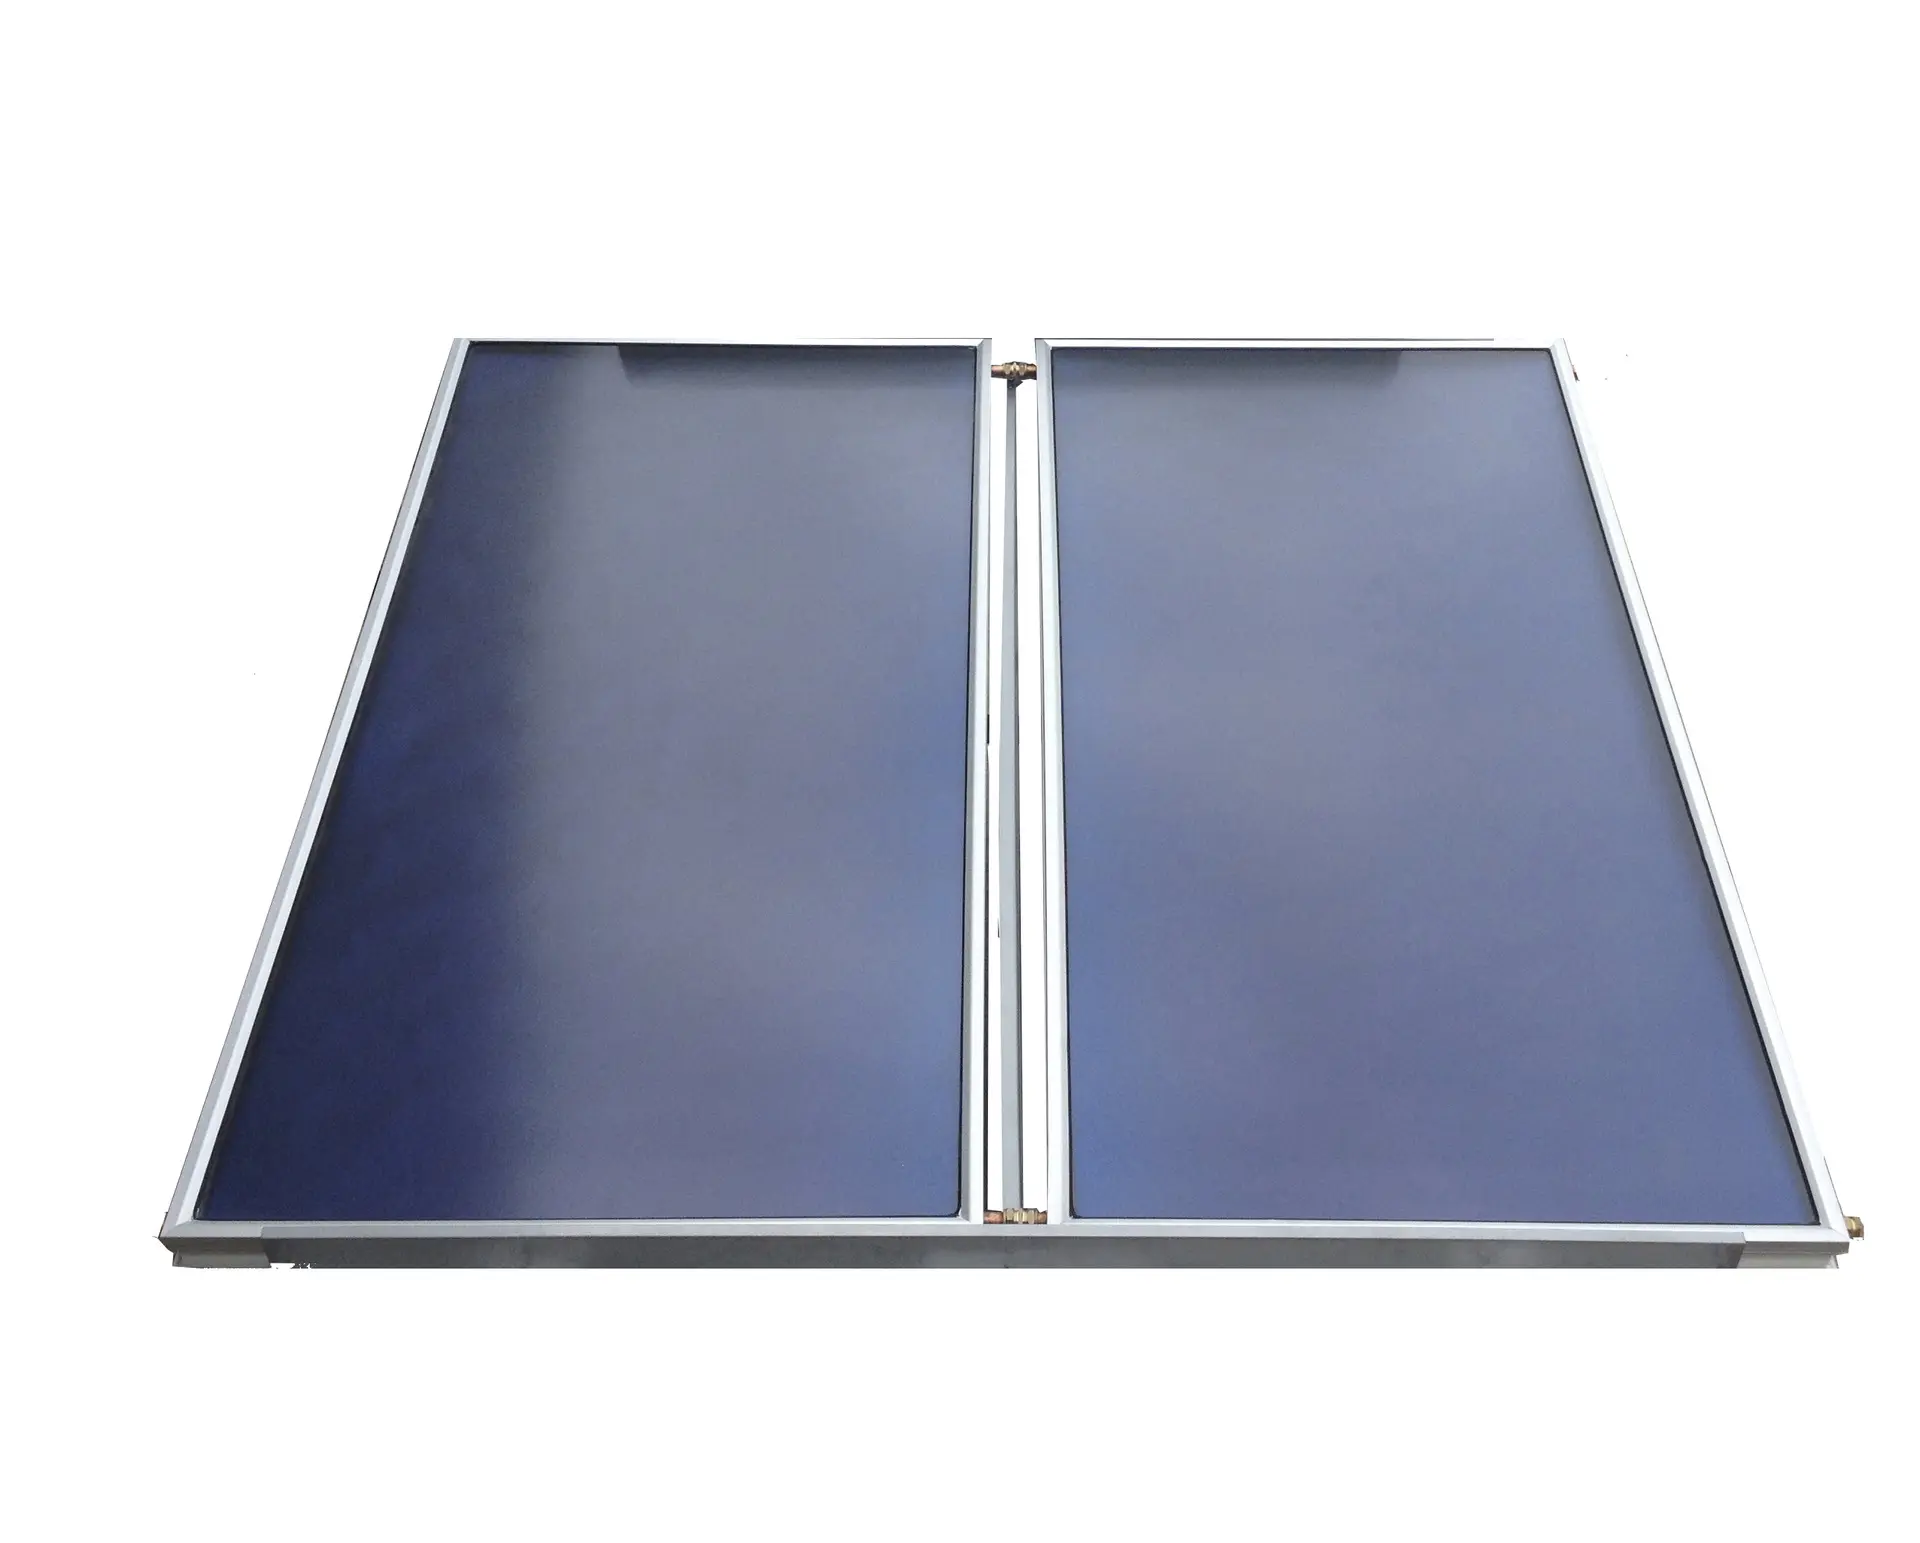 طلاء بلو تيك، 2000*1250*80 مم مع 9 أنابيب نظام سبليت لوحة مسطحة لحشد الطاقة الشمسية لمشروع الطاقة الشمسية